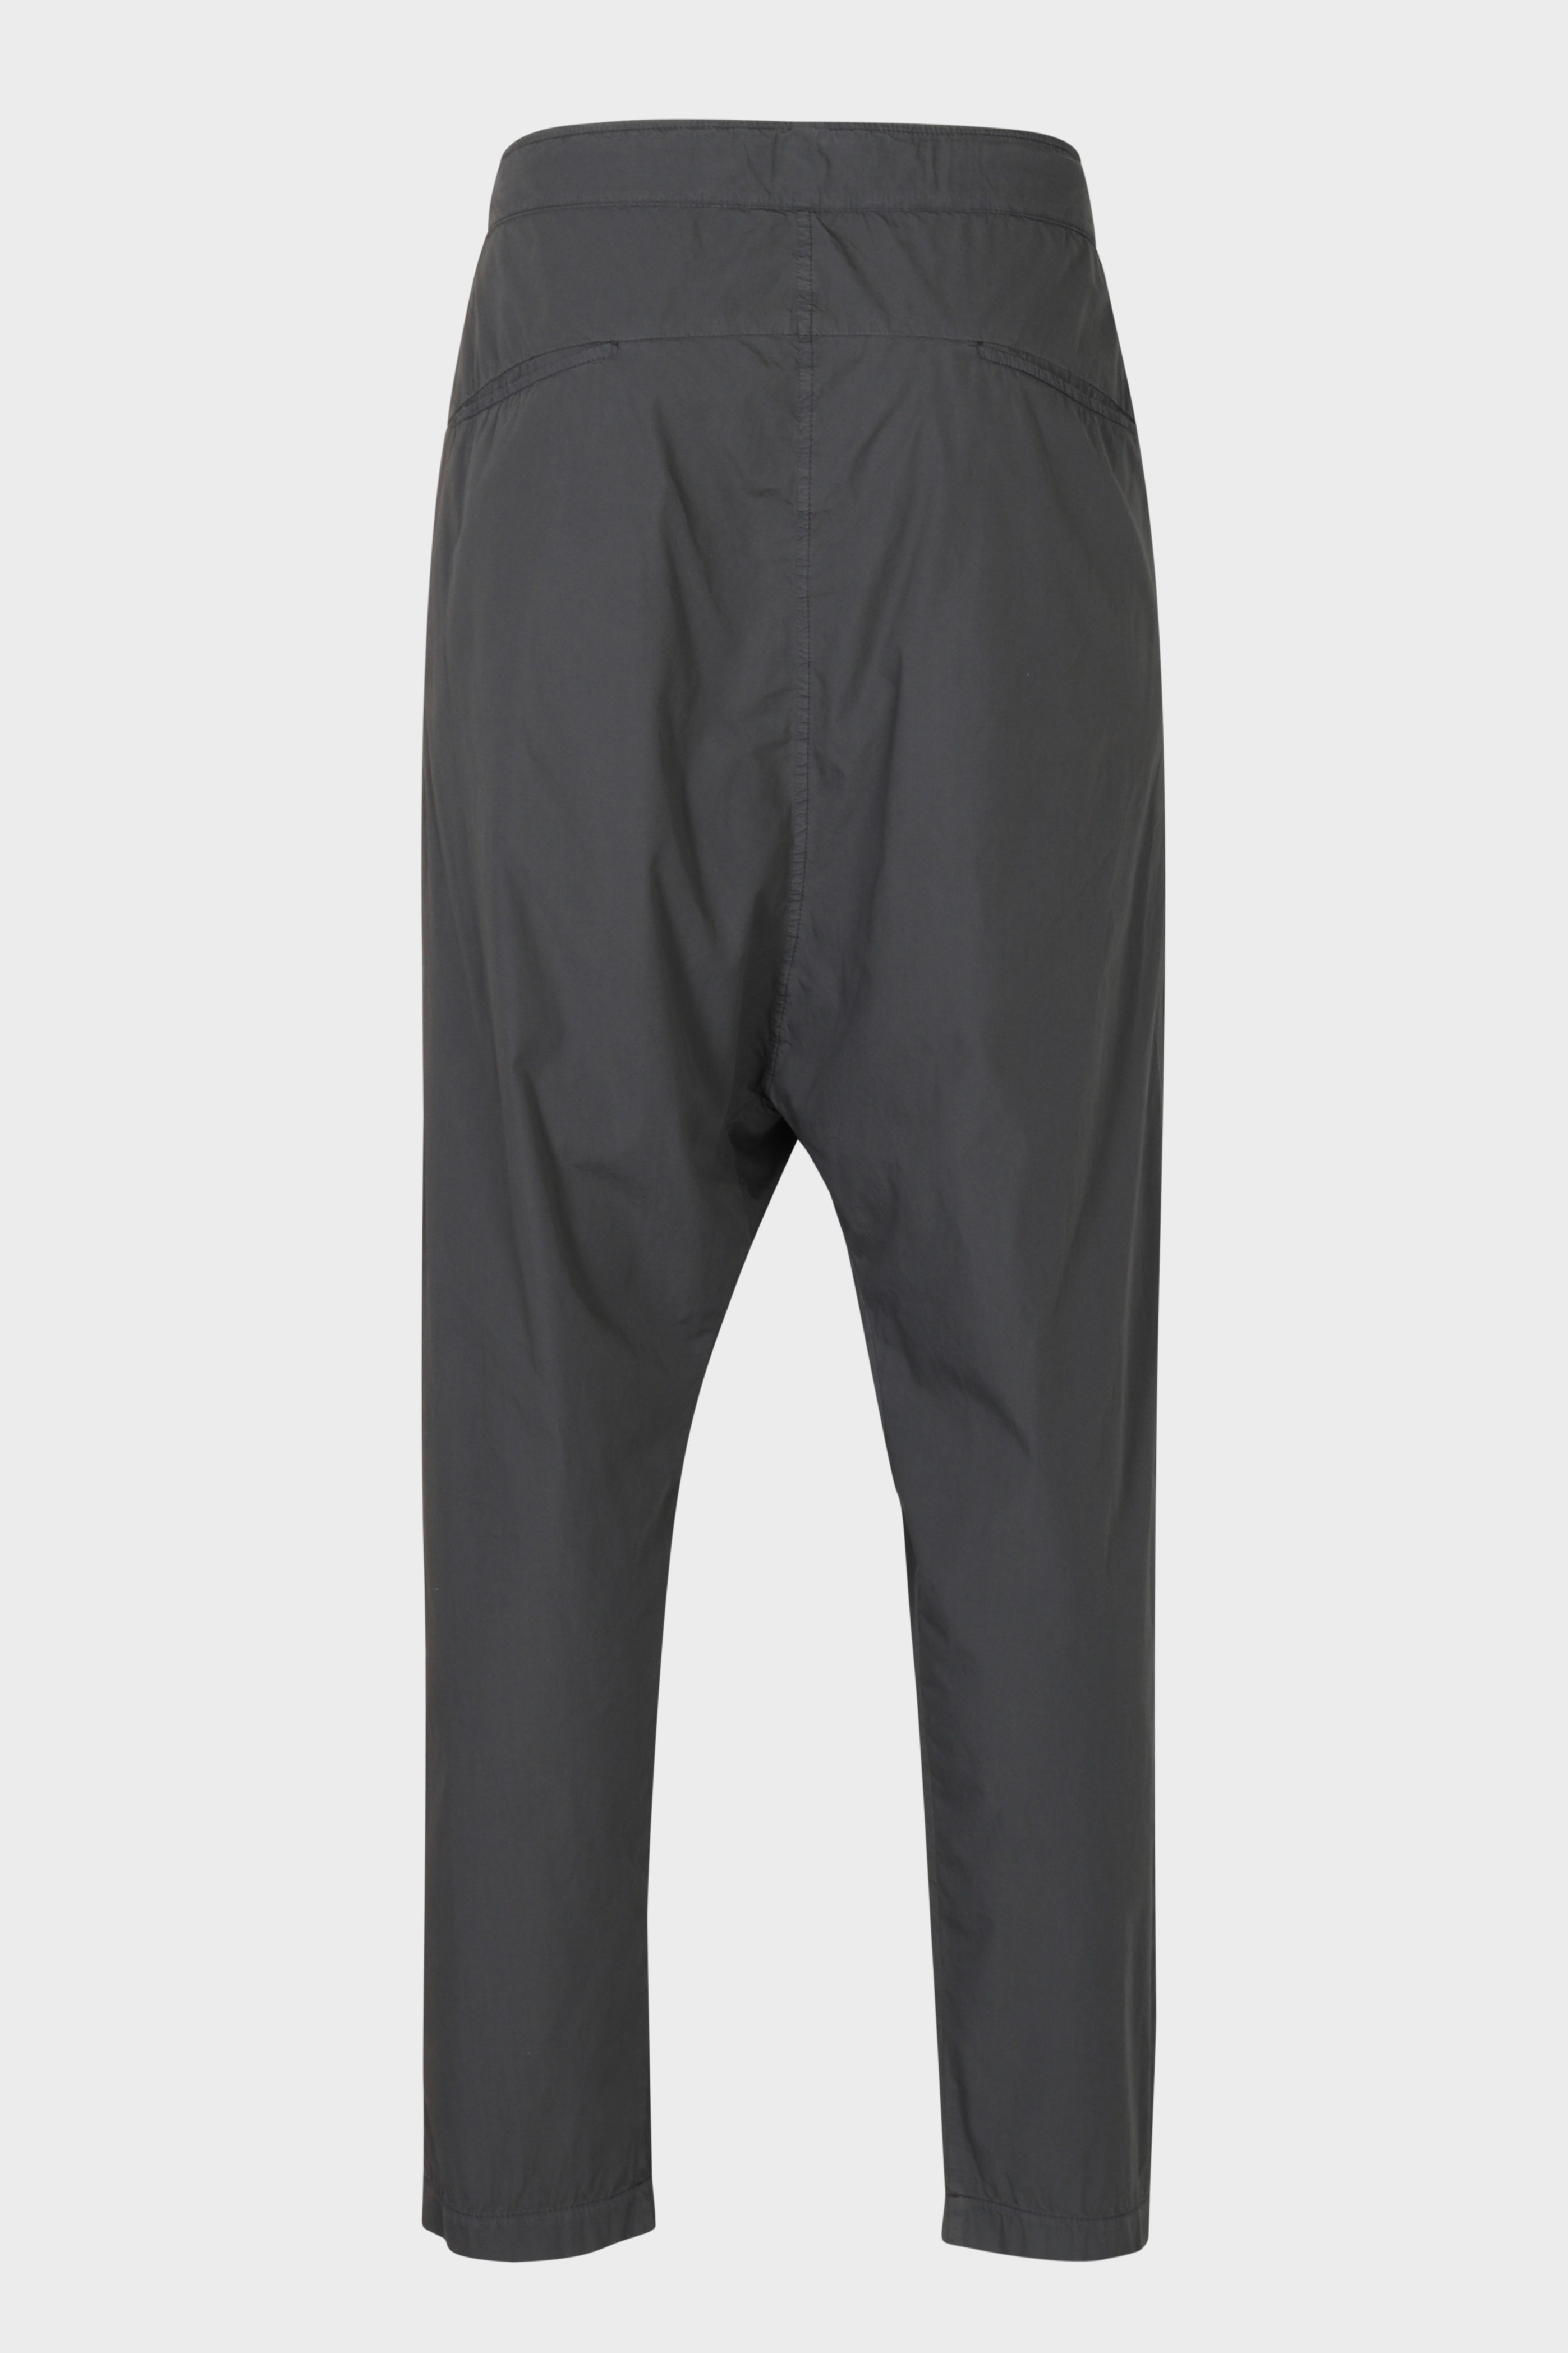 TRANSIT UOMO Light Cotton Pant in Dark Grey S